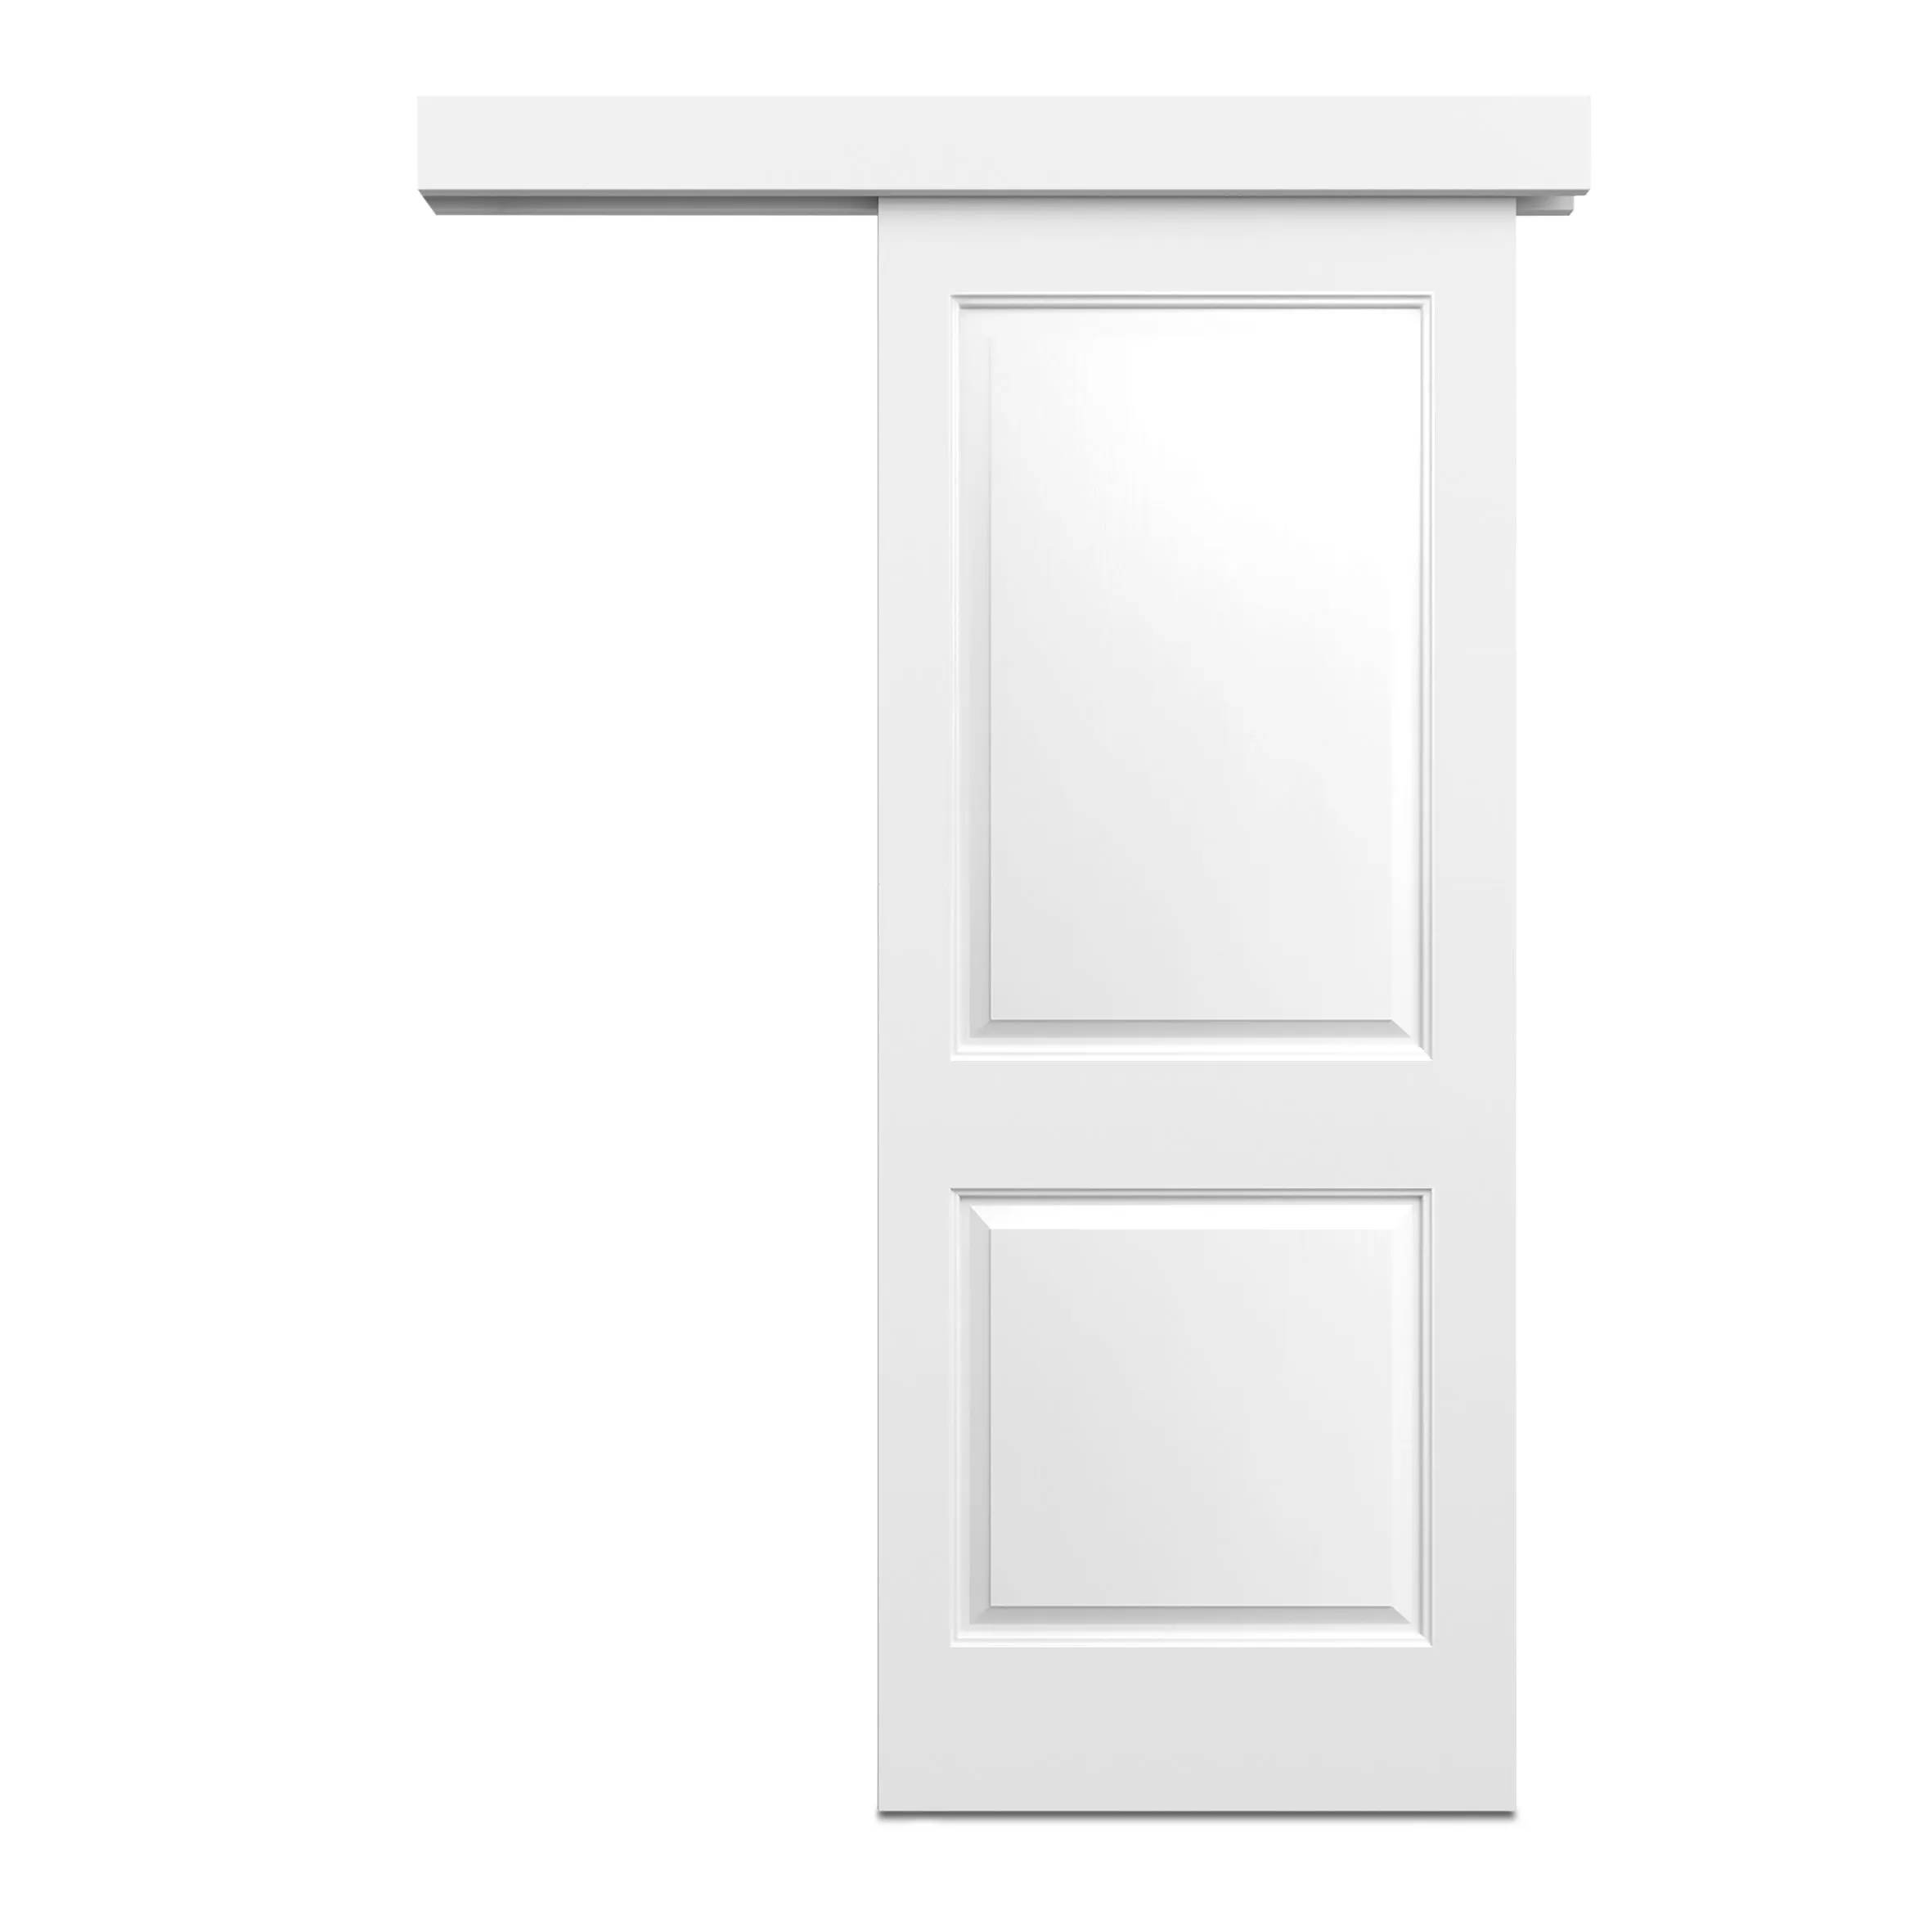 2 panel Primed White Internal Sliding Door, (H)2040mm (W)826mm